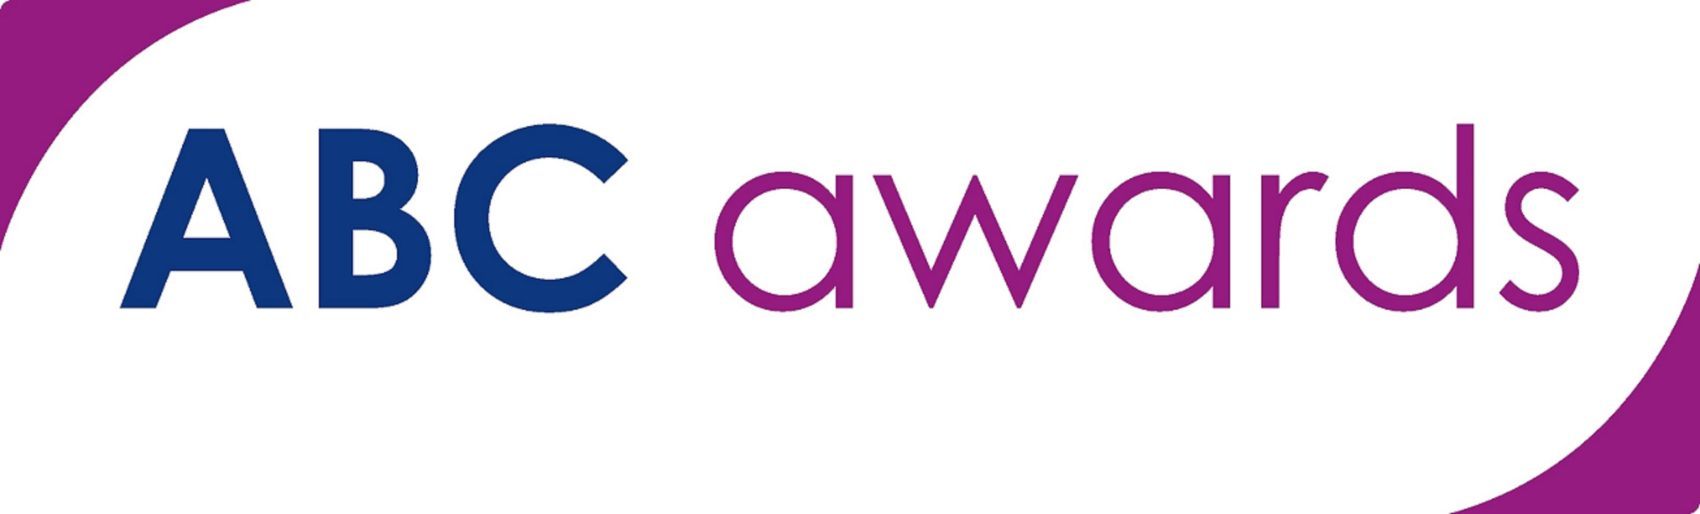 ABC Awards Logo